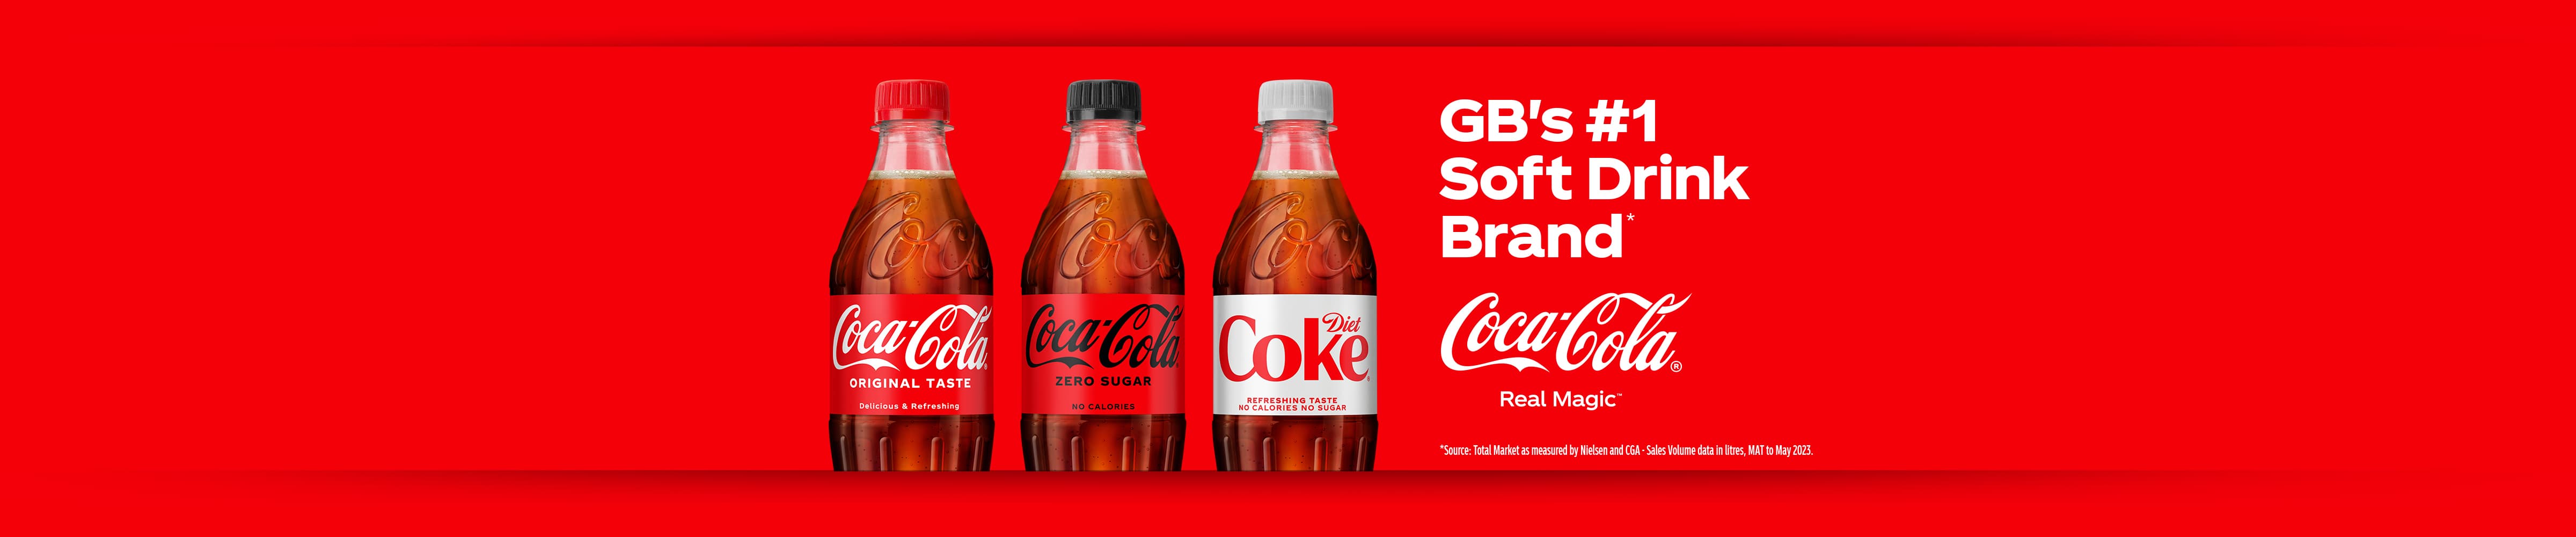 GB's #1 Soft Drink Brand